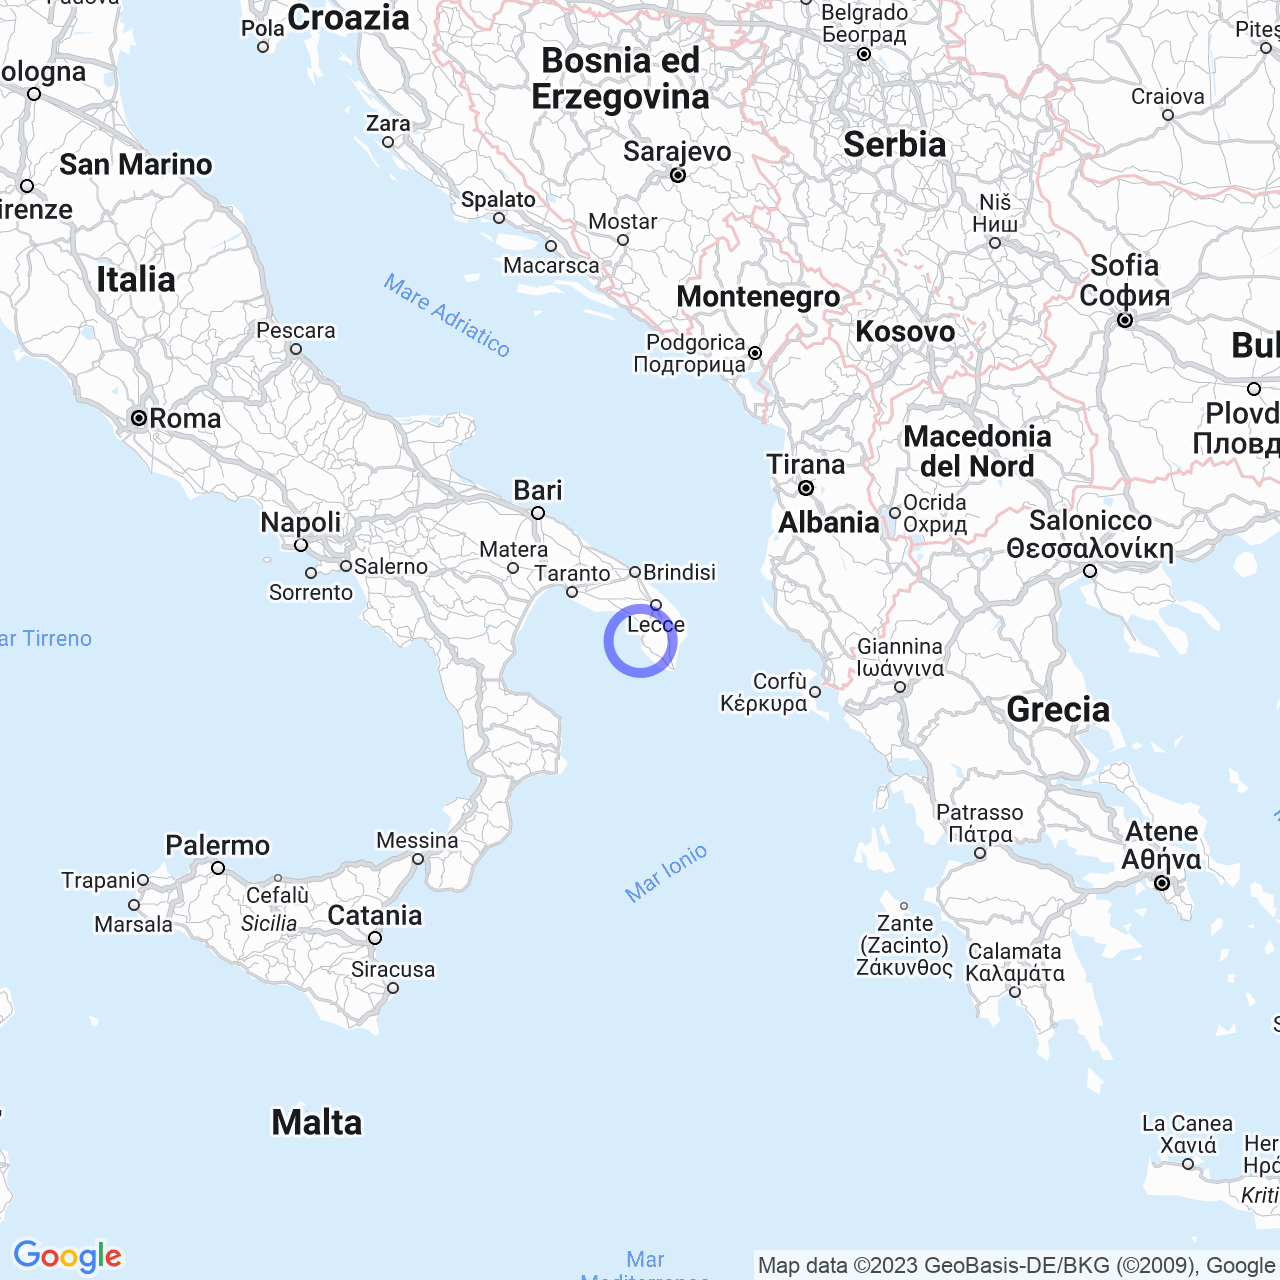 Gallipoli: la bella città del Salento sul mar Ionio